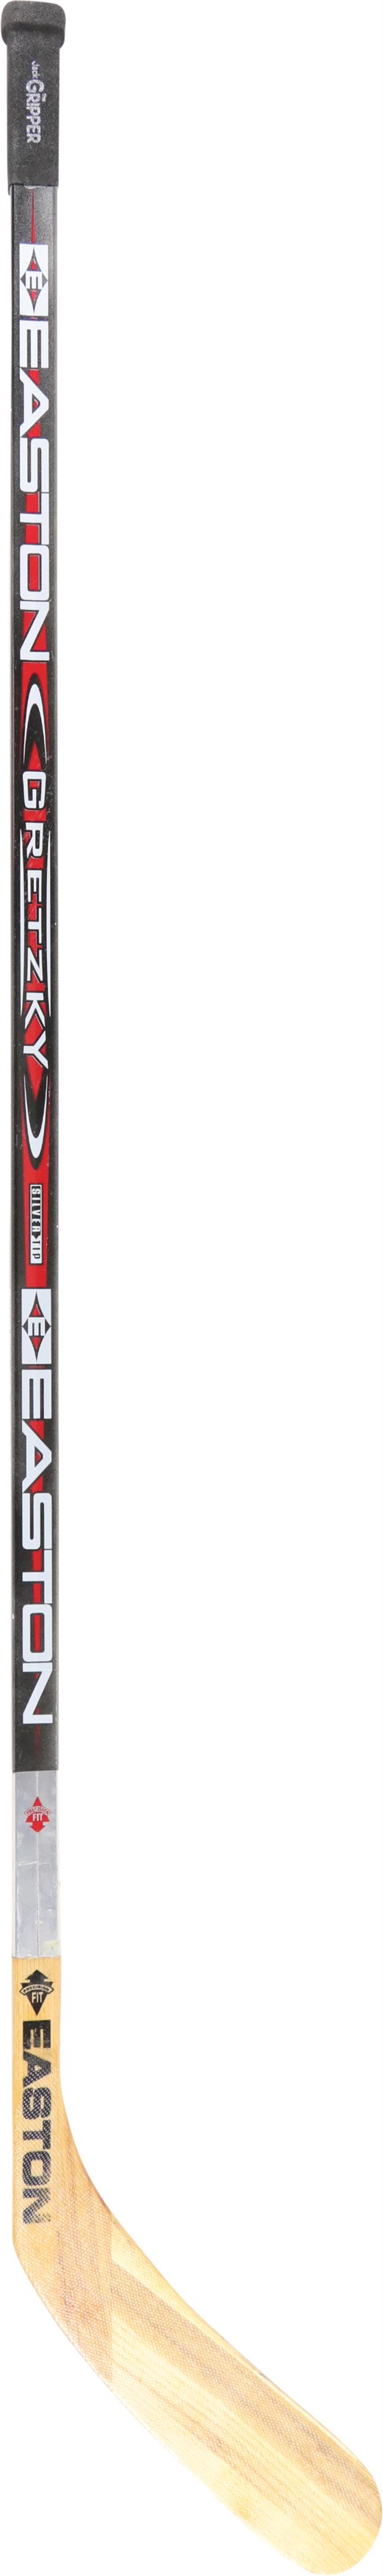 Hockey - Wayne Gretzky Game Used Easton Aluminum Stick